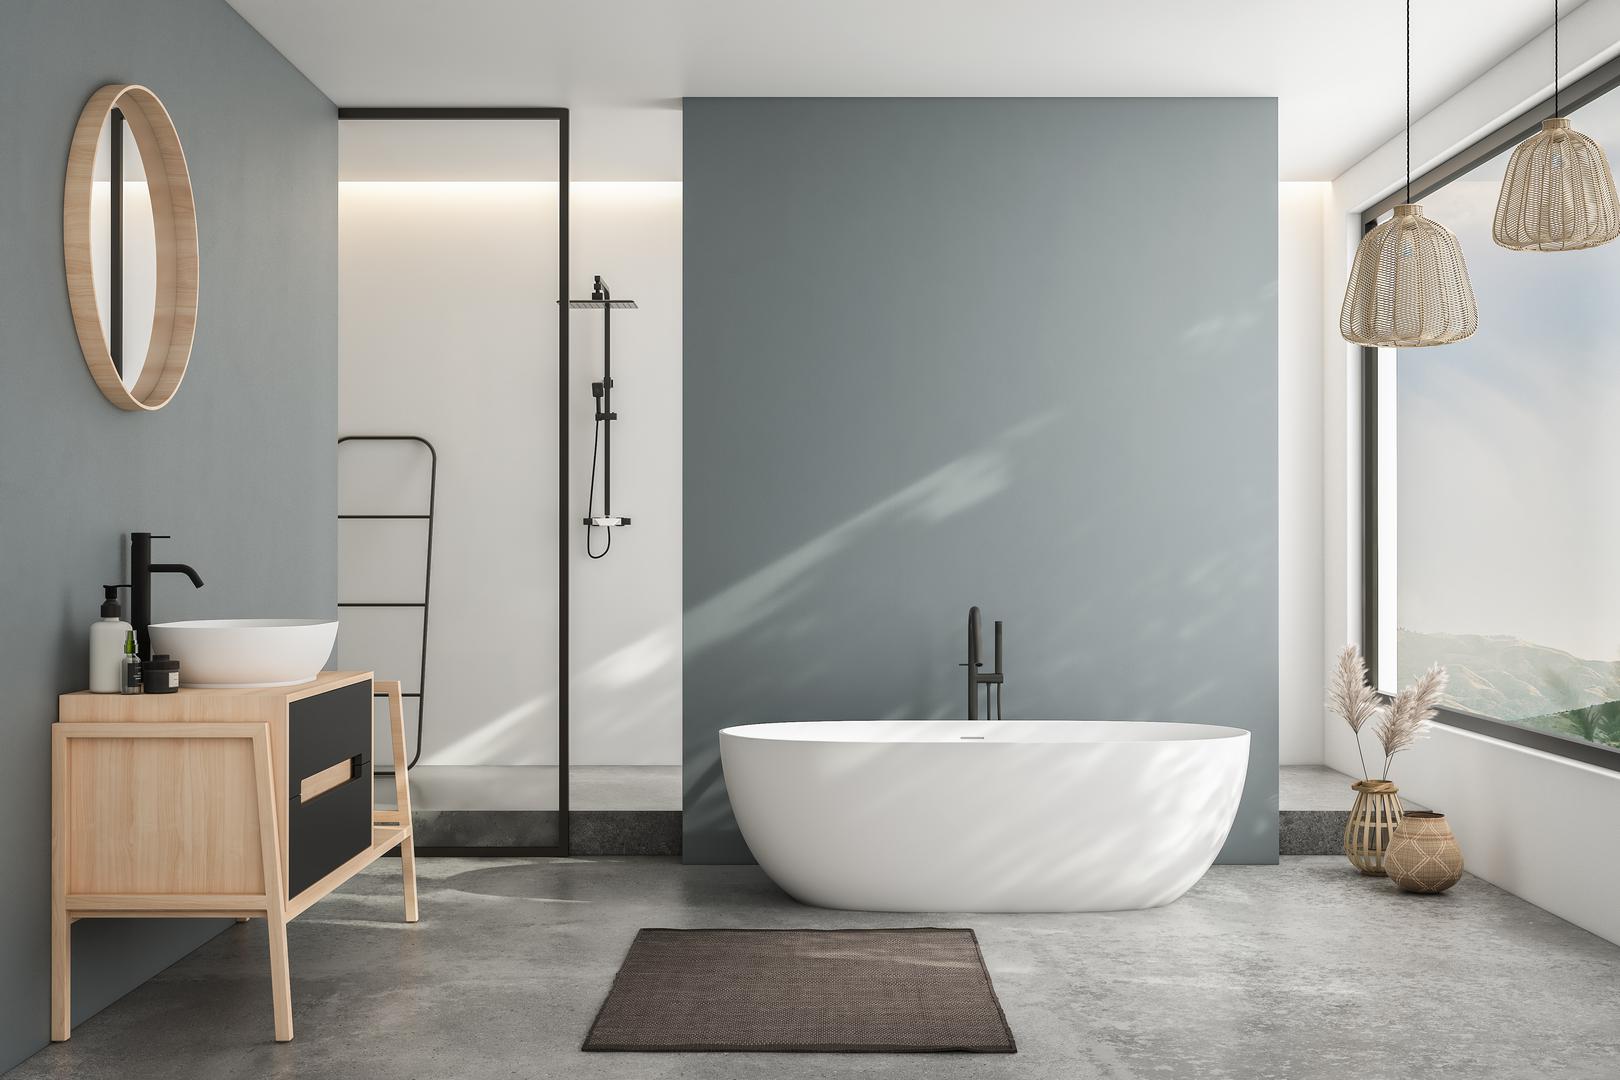 Siva: Osim smeđe, dizajnerica interijera Amy Switzer savjetuje da iz užeg izbora boja za kupaonicu izbacite zemljane tonove poput sive. "Boje koje su previše prigušene ili mutne, ili zagasito sive, mogu kupaonicu učiniti turobnom i neprivlačnom”, kaže ona. Switzer dodaje: "Iako se preferencije mogu uvelike razlikovati među dizajnerima, postoje određene boje za kupaonice koje pokušavam izbjeći zbog njihove mogućnosti sukoba s kupaonskim elementima, stvaraju vizualnu nelagodu ili izazivaju nepoželjne emocije. Važno je odabrati boje koje će osvijetliti prostor i učiniti ga ugodnijim." Ako želite neutralnu boju, ali želite nešto dublje od bijele, umjesto toga odlučite se za bogatu nijansu putera.